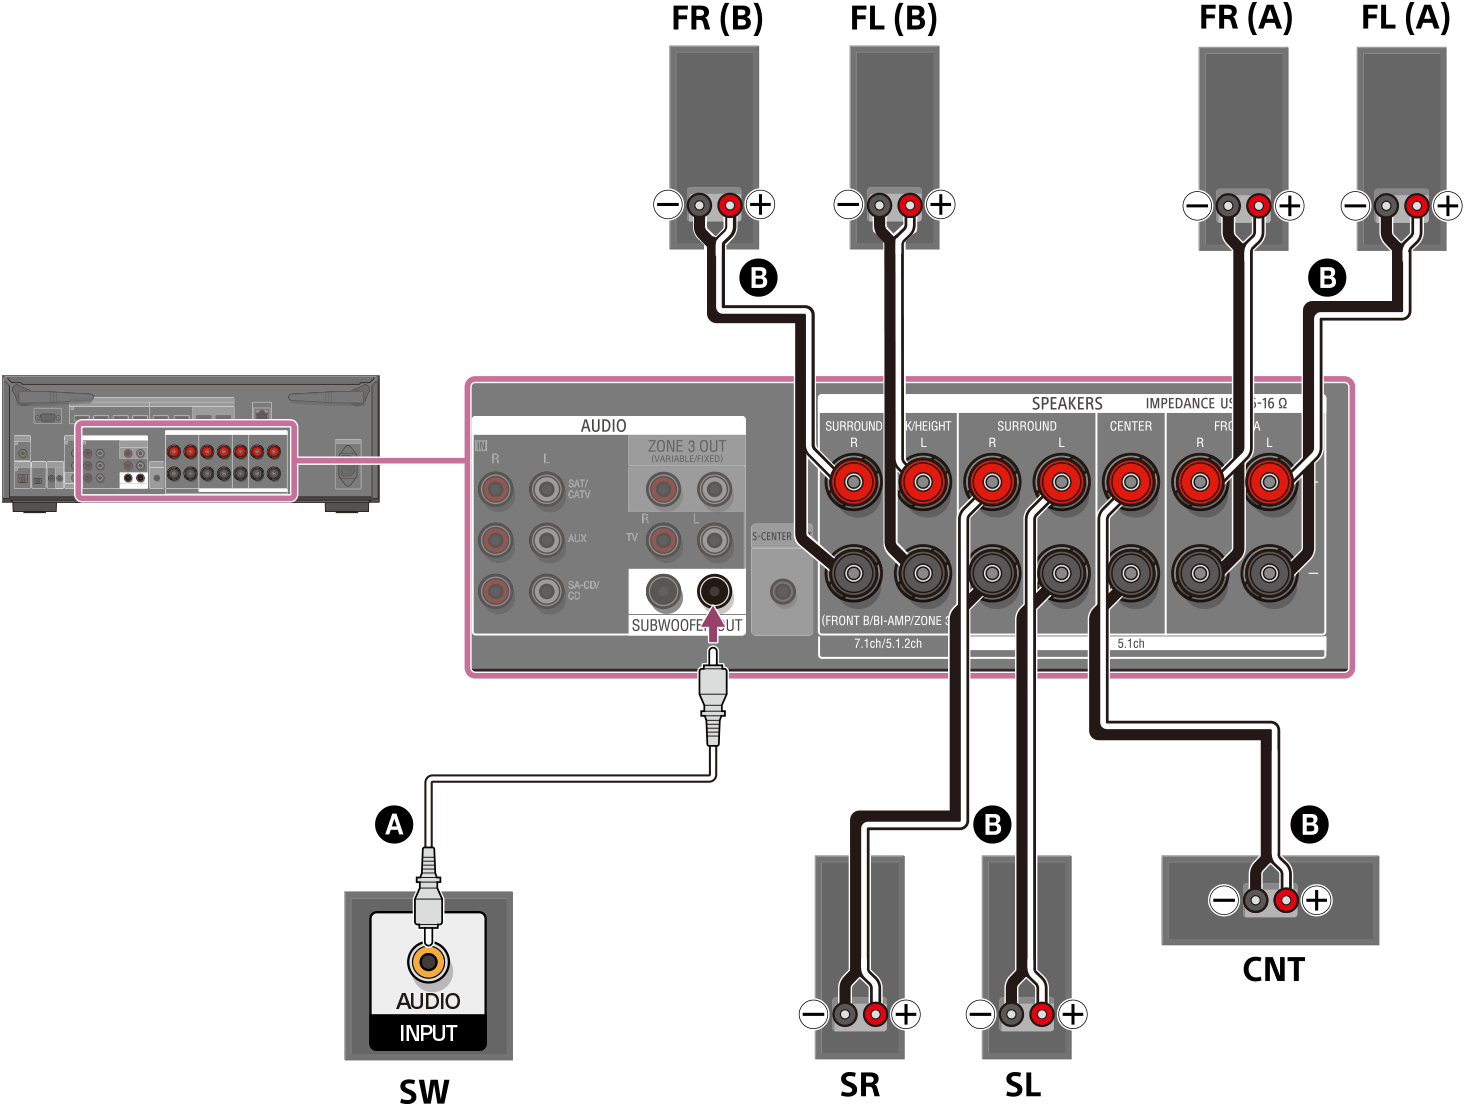 Ilustración de cómo conectar cada altavoz a los terminales de altavoz de la parte trasera de la unidad. Conecte los altavoces A delanteros izquierdo y derecho, los altavoces B delanteros izquierdo y derecho, los altavoces envolventes izquierdo y derecho, y el altavoz central a sus terminales de altavoz respectivos utilizando cables de altavoz (no incluidos). Conecte el altavoz potenciador de graves al terminal SUBWOOFER OUT con un cable de audio monofónico (no incluido).